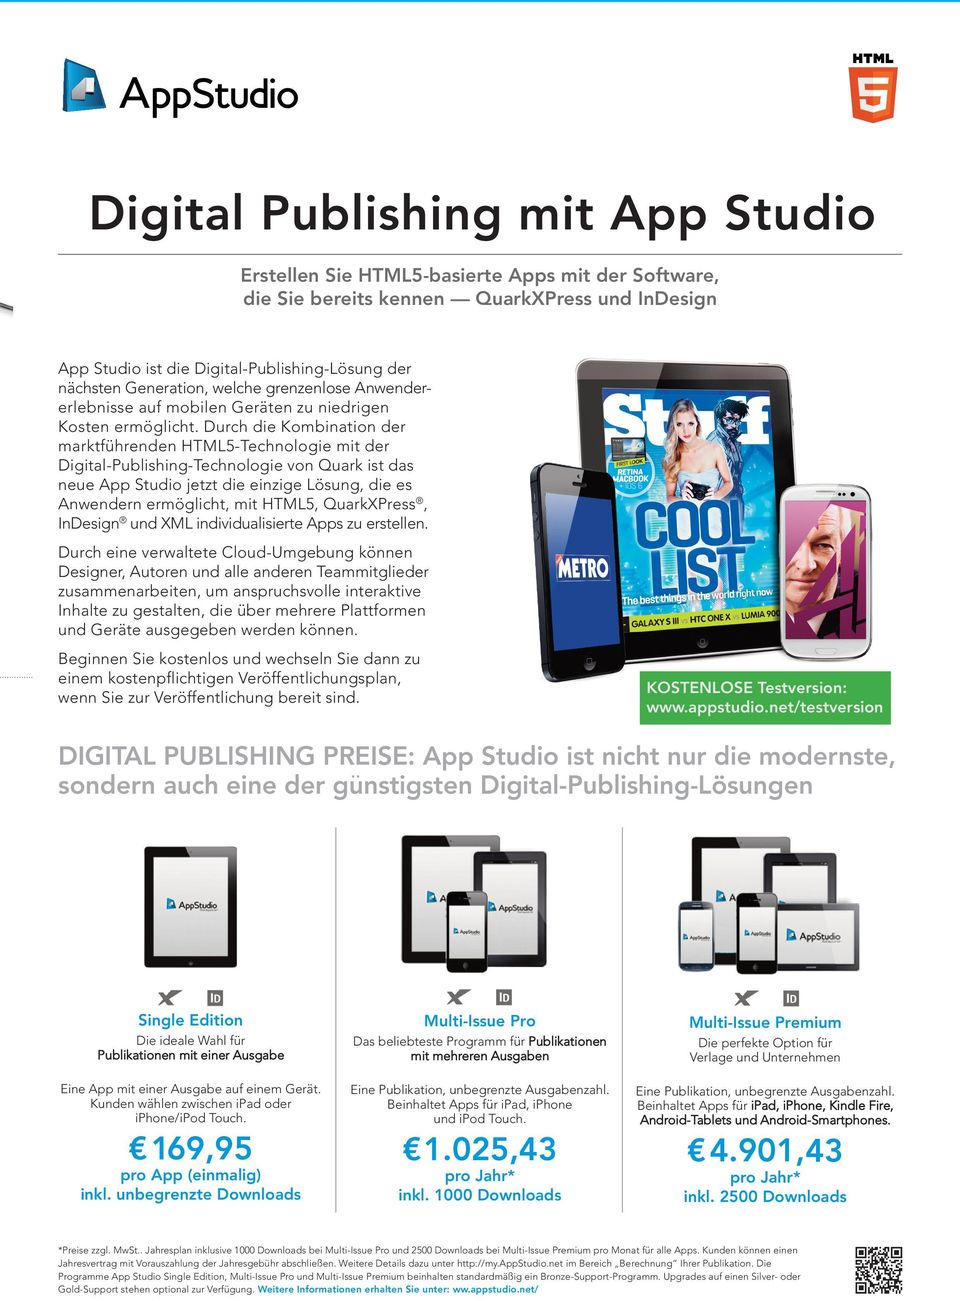 Durch die Kombination der marktführenden HTML5-Technologie mit der Digital-Publishing-Technologie von Quark ist das neue App Studio jetzt die einzige Lösung, die es Anwendern ermöglicht, mit HTML5,